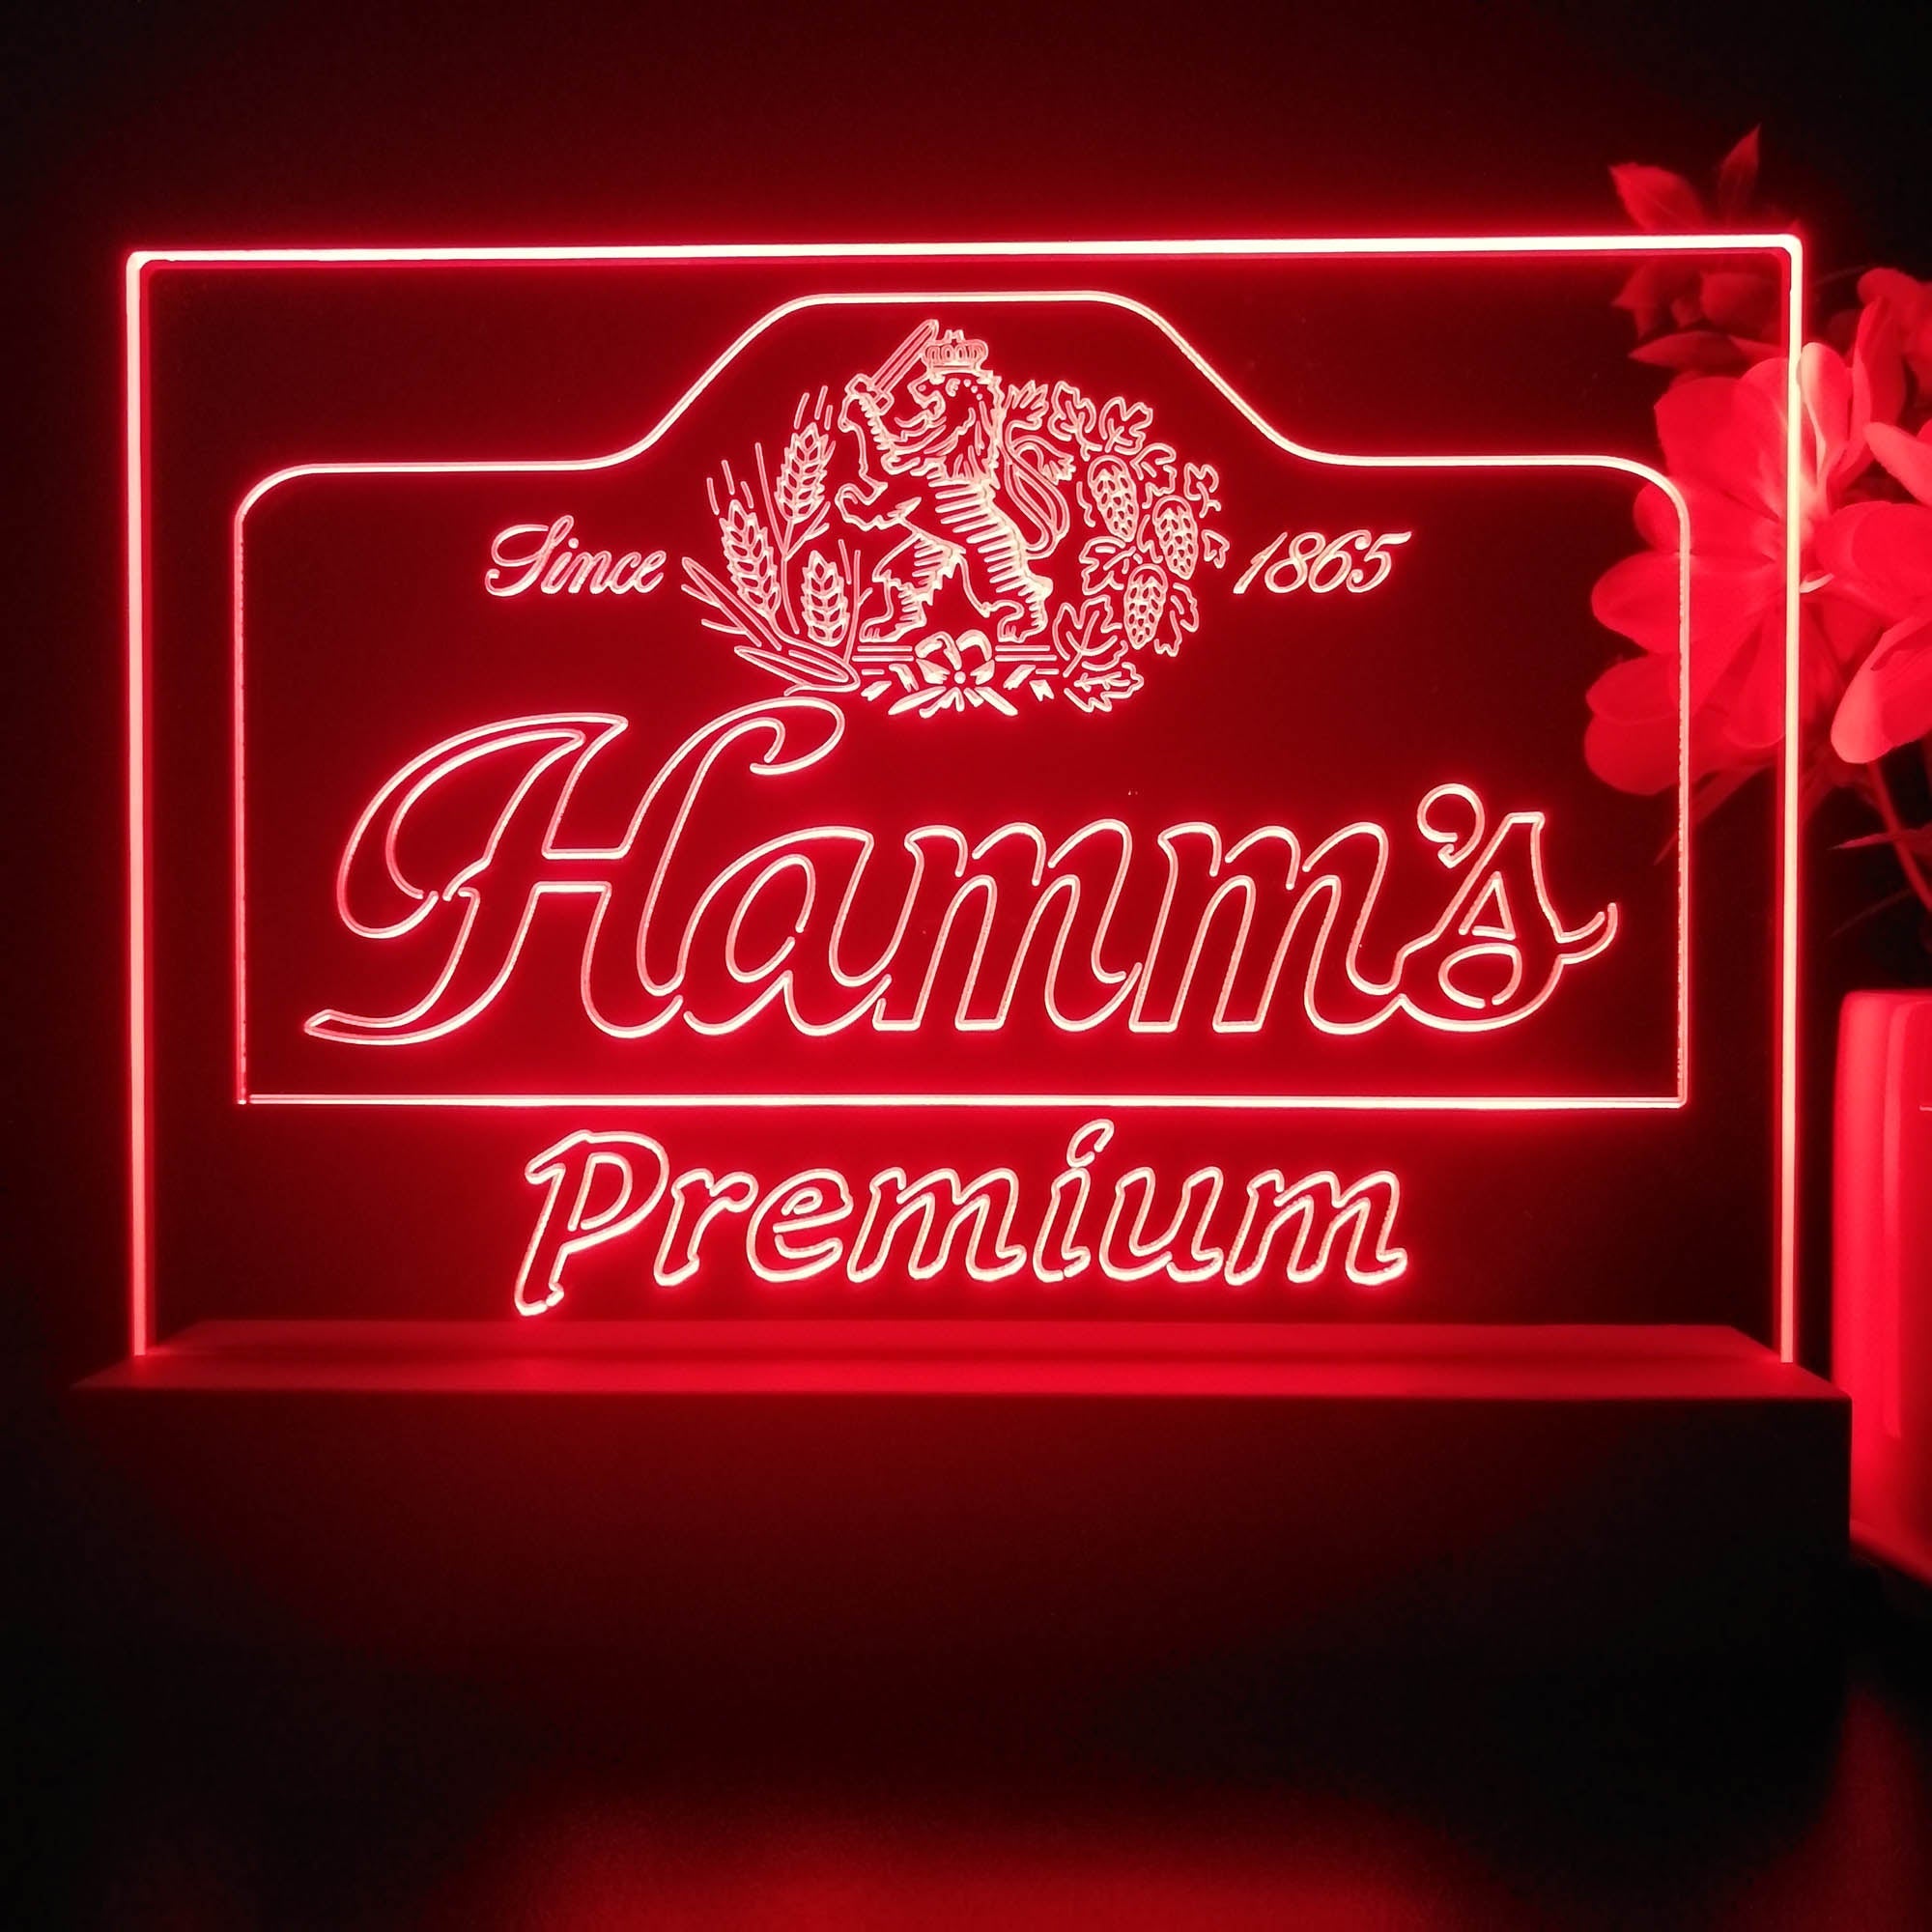 Hamm's Premium Est 1865 Neon Sign Pub Bar Decor Lamp